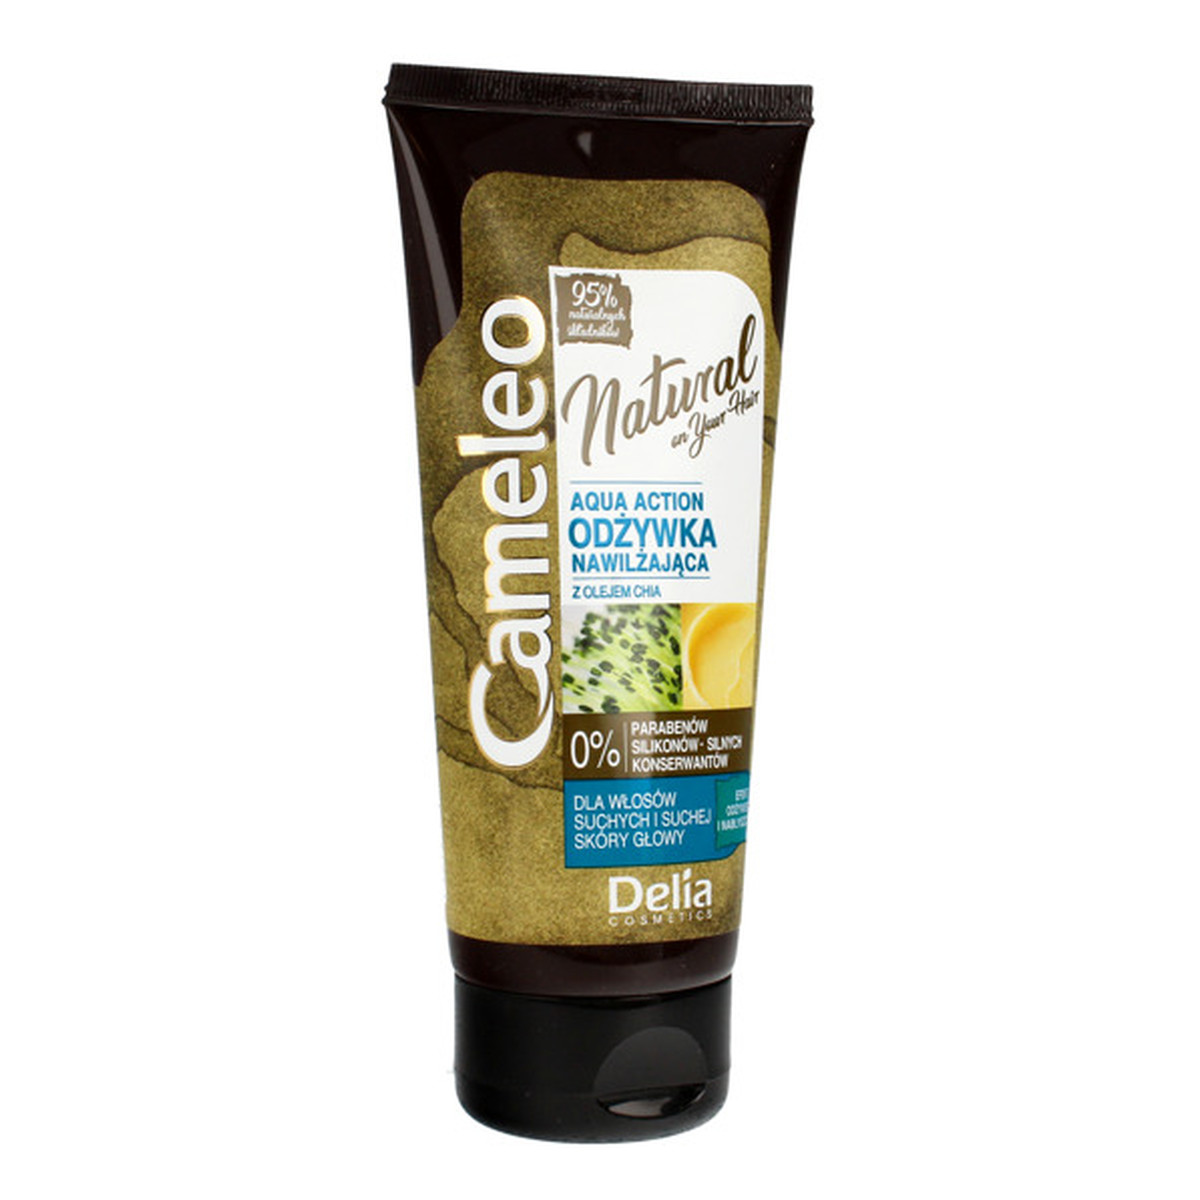 Cameleo Natural On Your Hair Aqua Action Odżywka Nawilżająca Do Włosów Z Olejem Chia 200ml